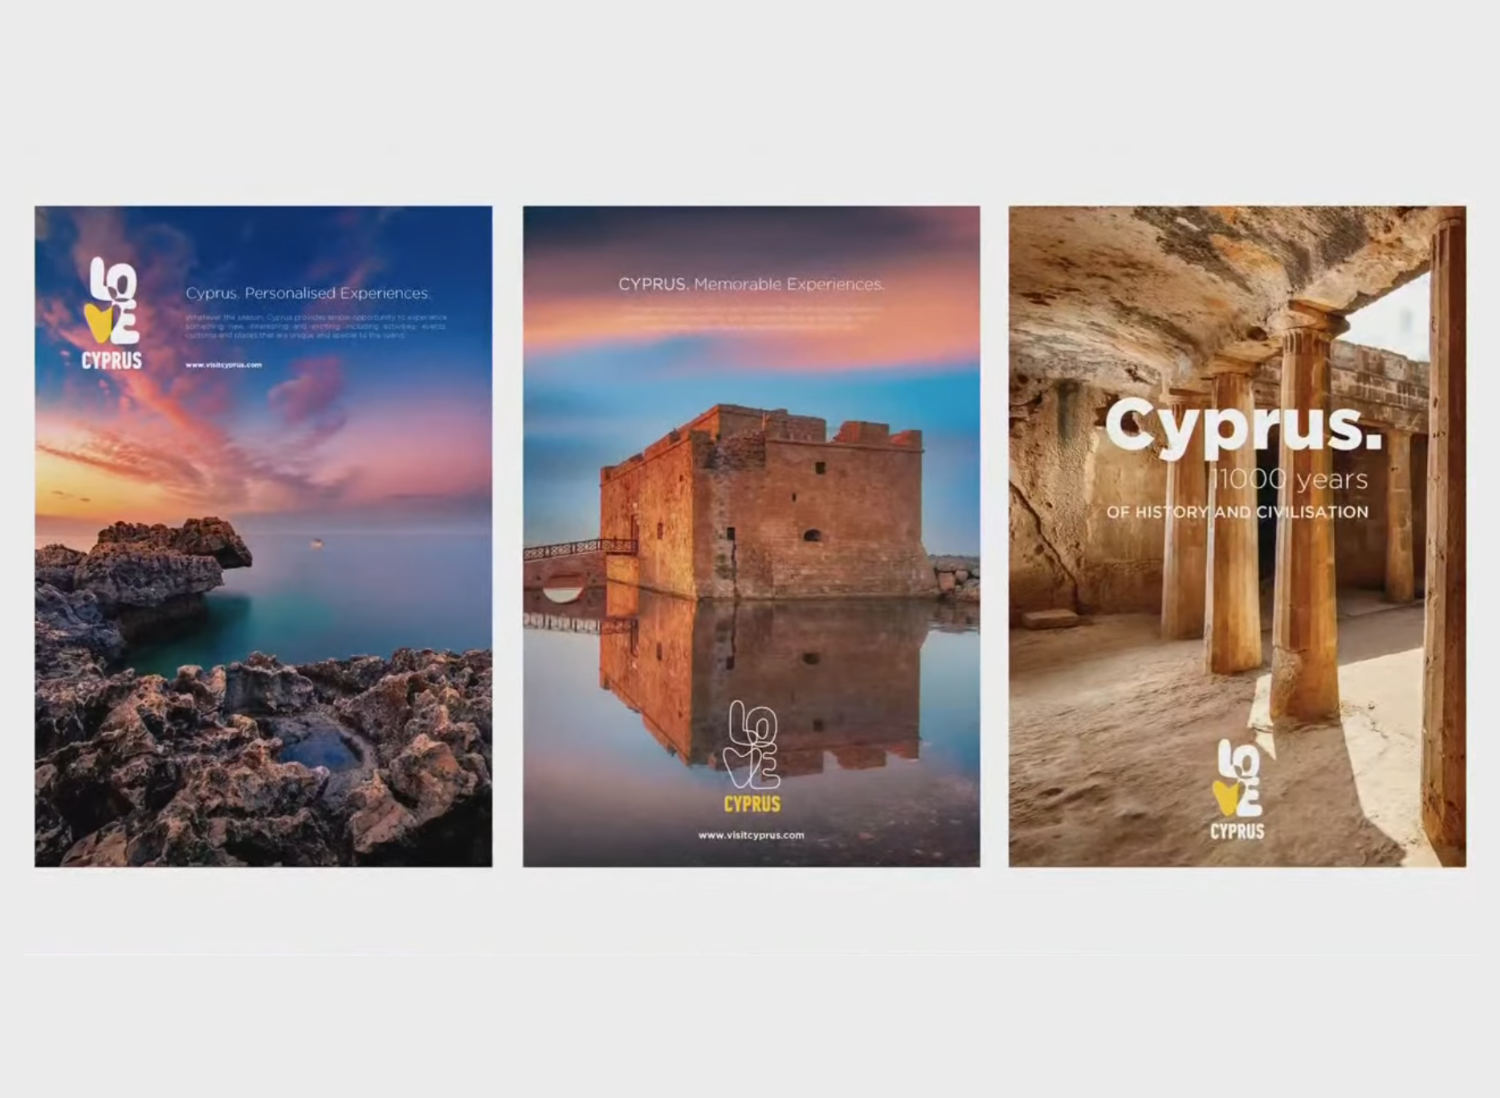 Cyprus Tourism Branding Visual, Quelle: Ministerium für Tourismus Zypern